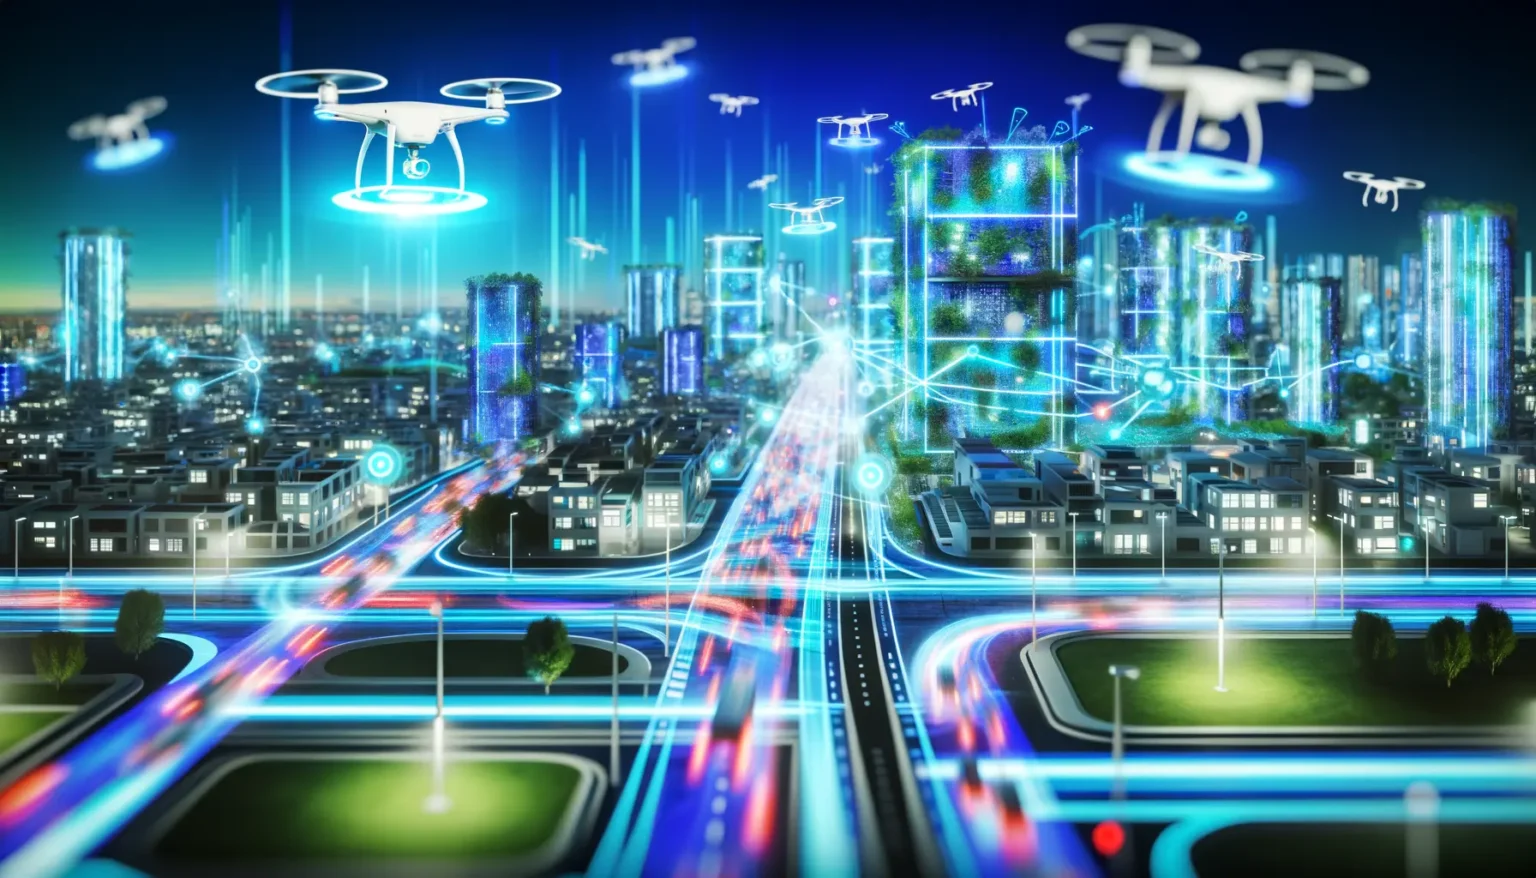 Eine futuristische Stadt bei Nacht mit fortgeschrittenen Technologien, darunter mehrere schwebende Drohnen im Himmel und beleuchtete Hochhäuser mit integrierter Vegetation. Leuchtende Fahrspuren zeigen schnelle Bewegungen von Fahrzeugen auf komplexen Straßennetzen, während digitale Netzwerkverbindungen und Datenströme durch die Luft visualisiert werden, was auf eine hochvernetzte und automatisierte urbane Umgebung hinweist.